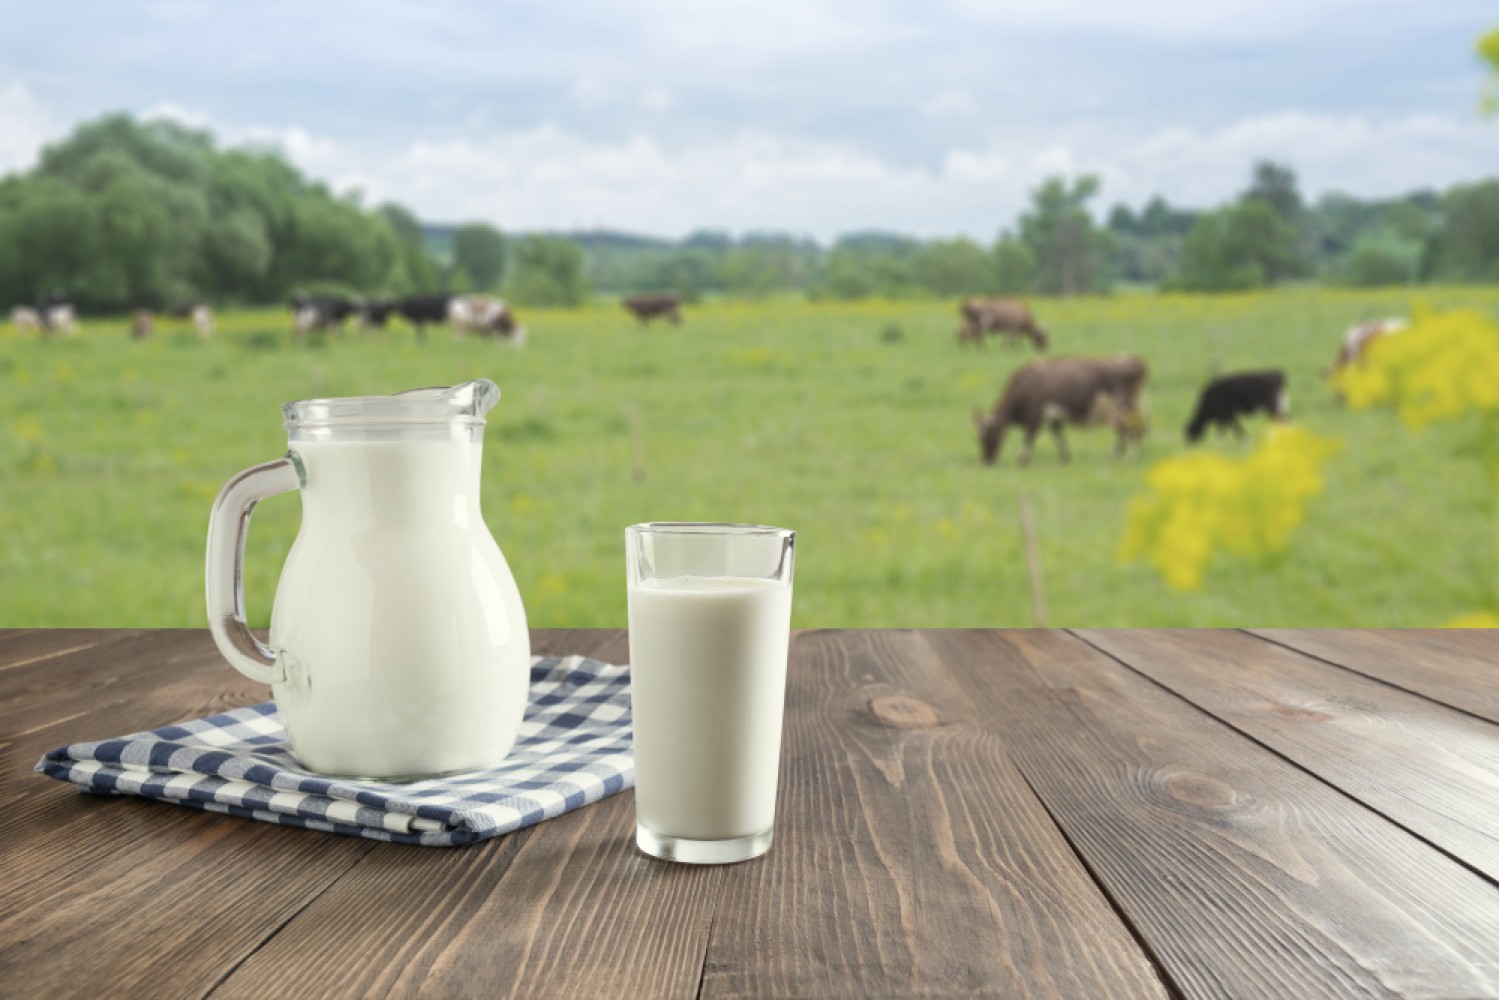 Подробный анализ технологического процесса производства молока на промышленном уровне. Рассмотрение основных этапов, методик, используемого оборудования, а также важности контроля качества в этой отрасли.